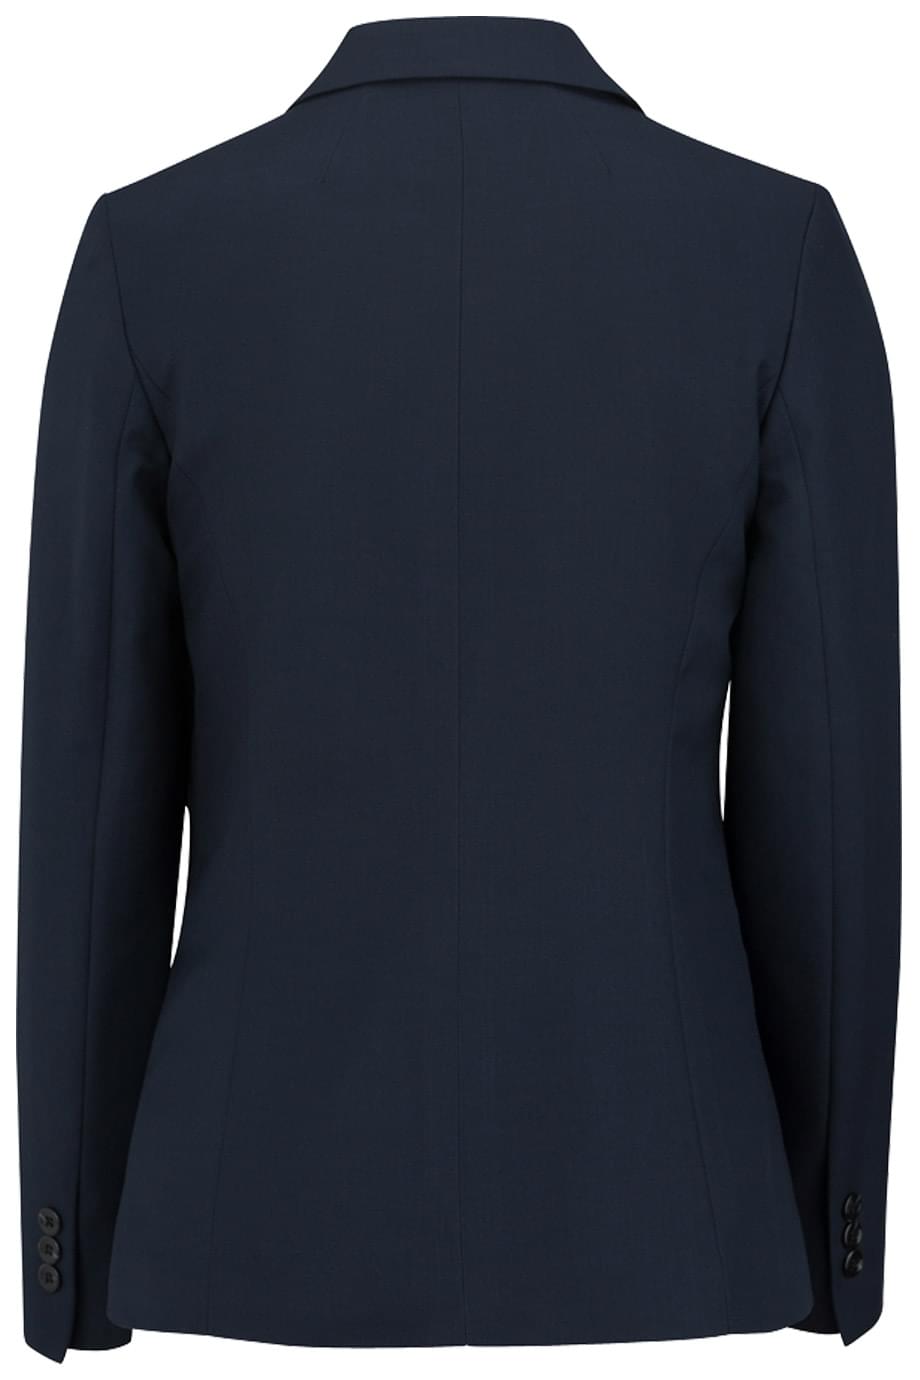 SYNERGY SUIT COAT | Edwards Garment